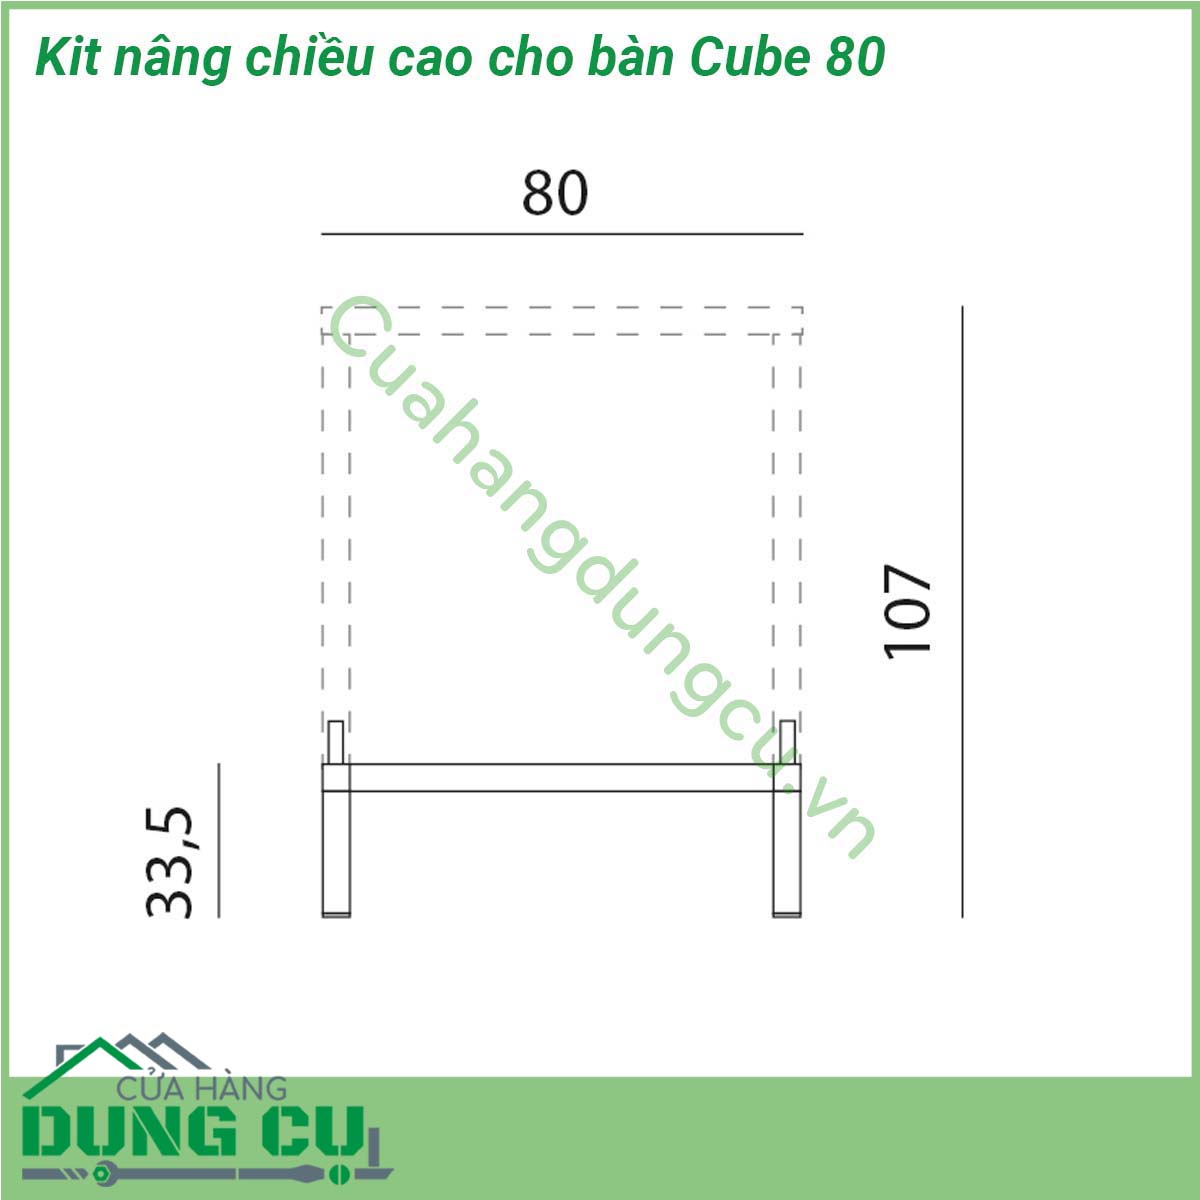 Kit nâng chiều cao cho bàn Cube 80 nâng chiều cao (từ 75 5 cm đến 107 cm) cho Bàn Cube 80  Chân nhôm siêu bền chống trượt chống bạc màu bất chấp thời tiết nắng mưa